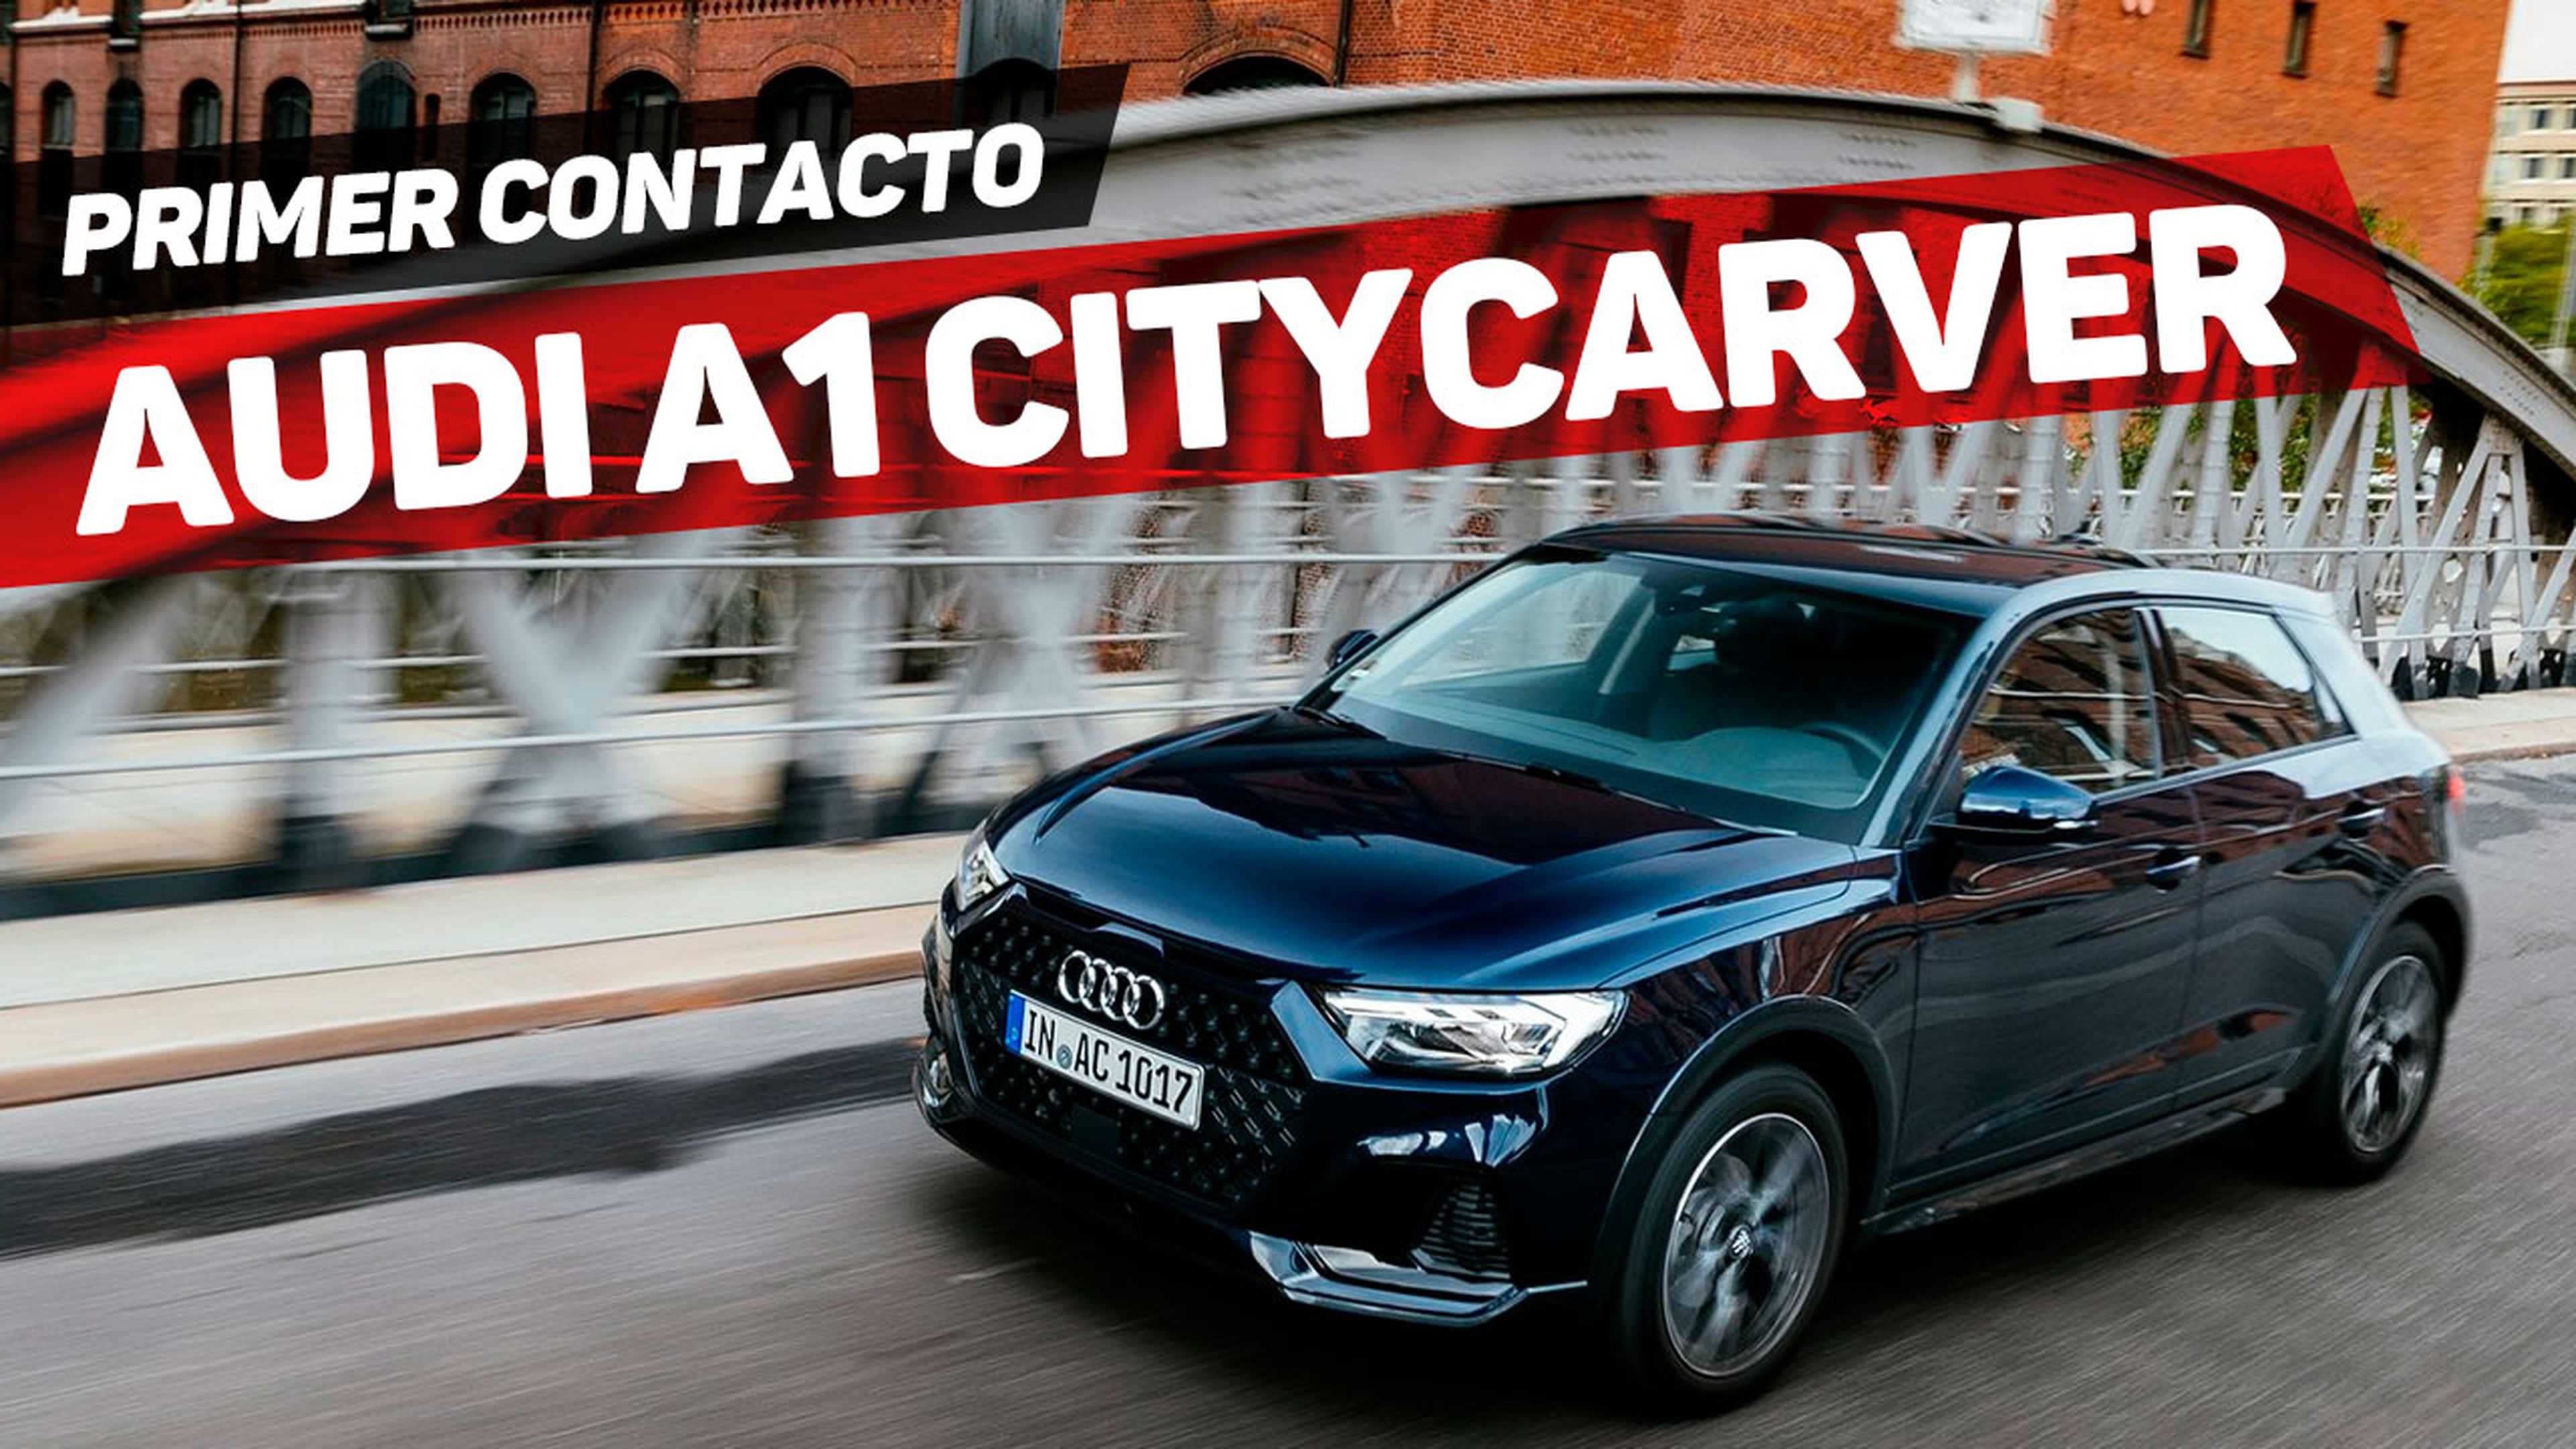 Vídeo: Audi A1 Citycarver